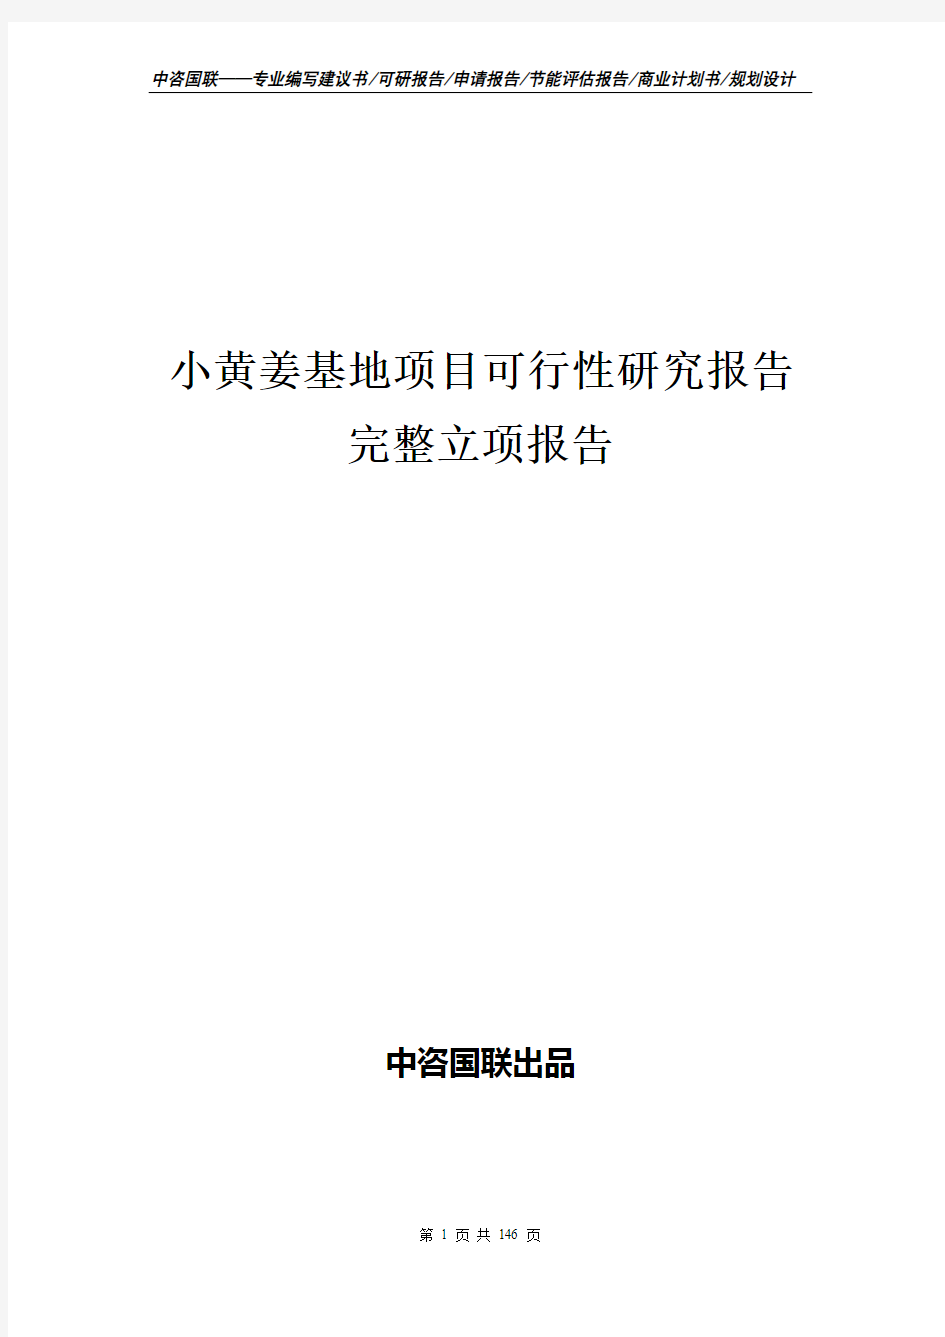 小黄姜基地项目可行性研究报告完整立项报告